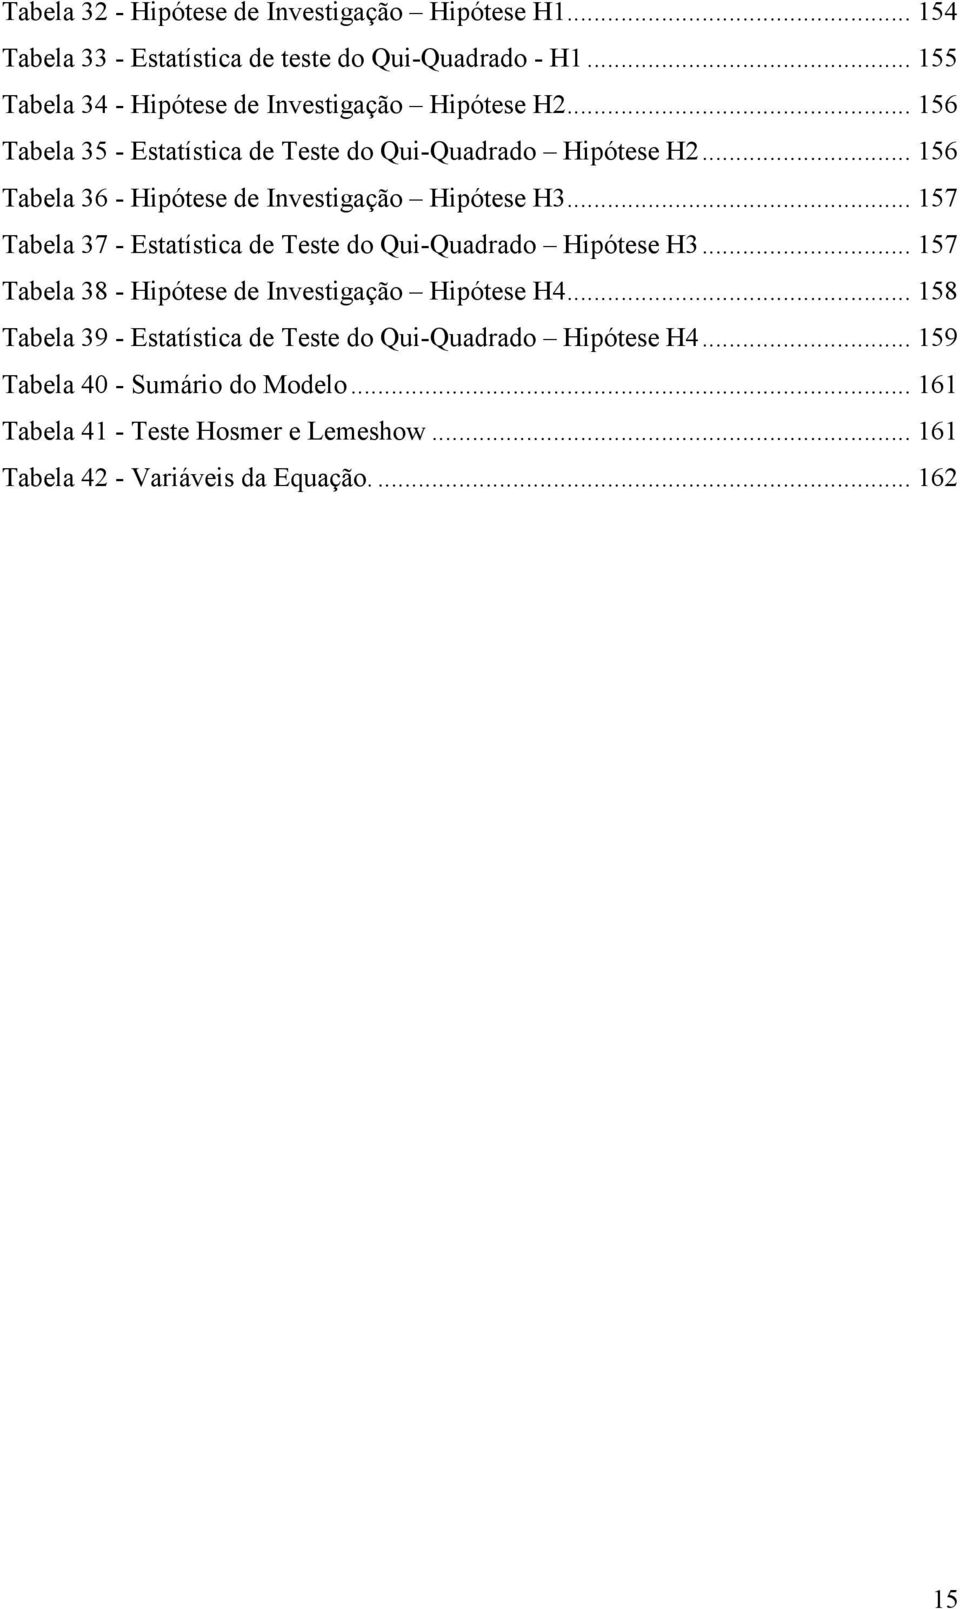 .. 156 Tabela 36 - Hipótese de Investigação Hipótese H3... 157 Tabela 37 - Estatística de Teste do Qui-Quadrado Hipótese H3.